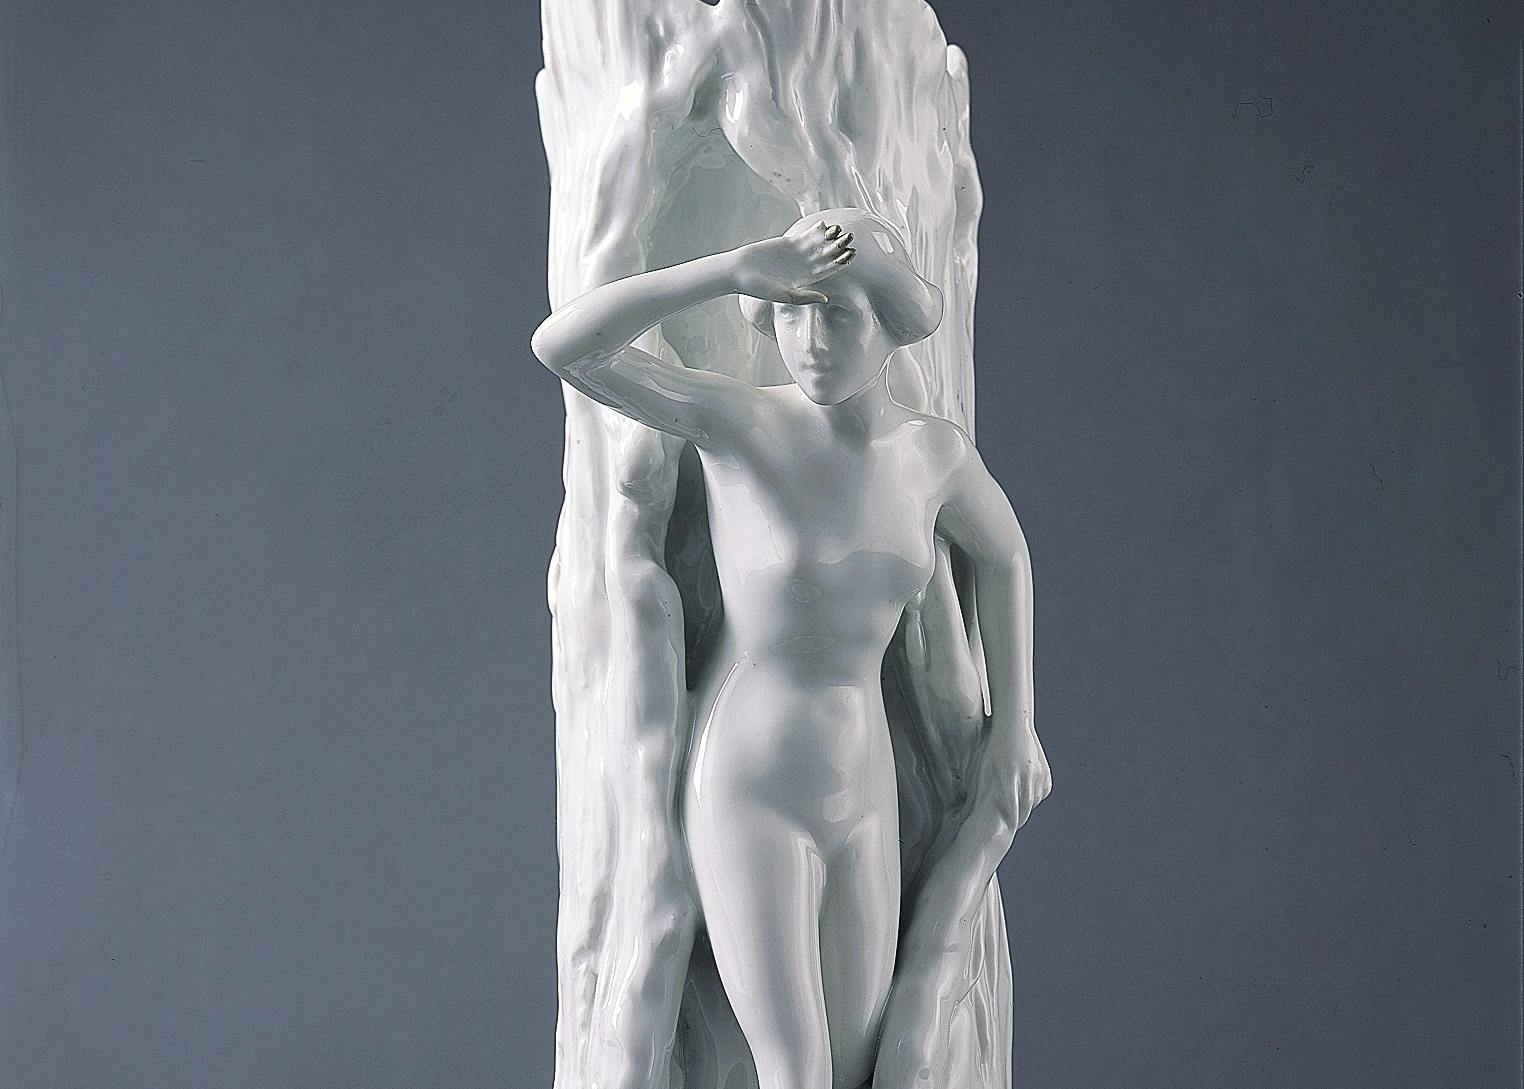 Vaso bianco a forma di tronco con donna nuda che esce dalla corteccia dell'albero